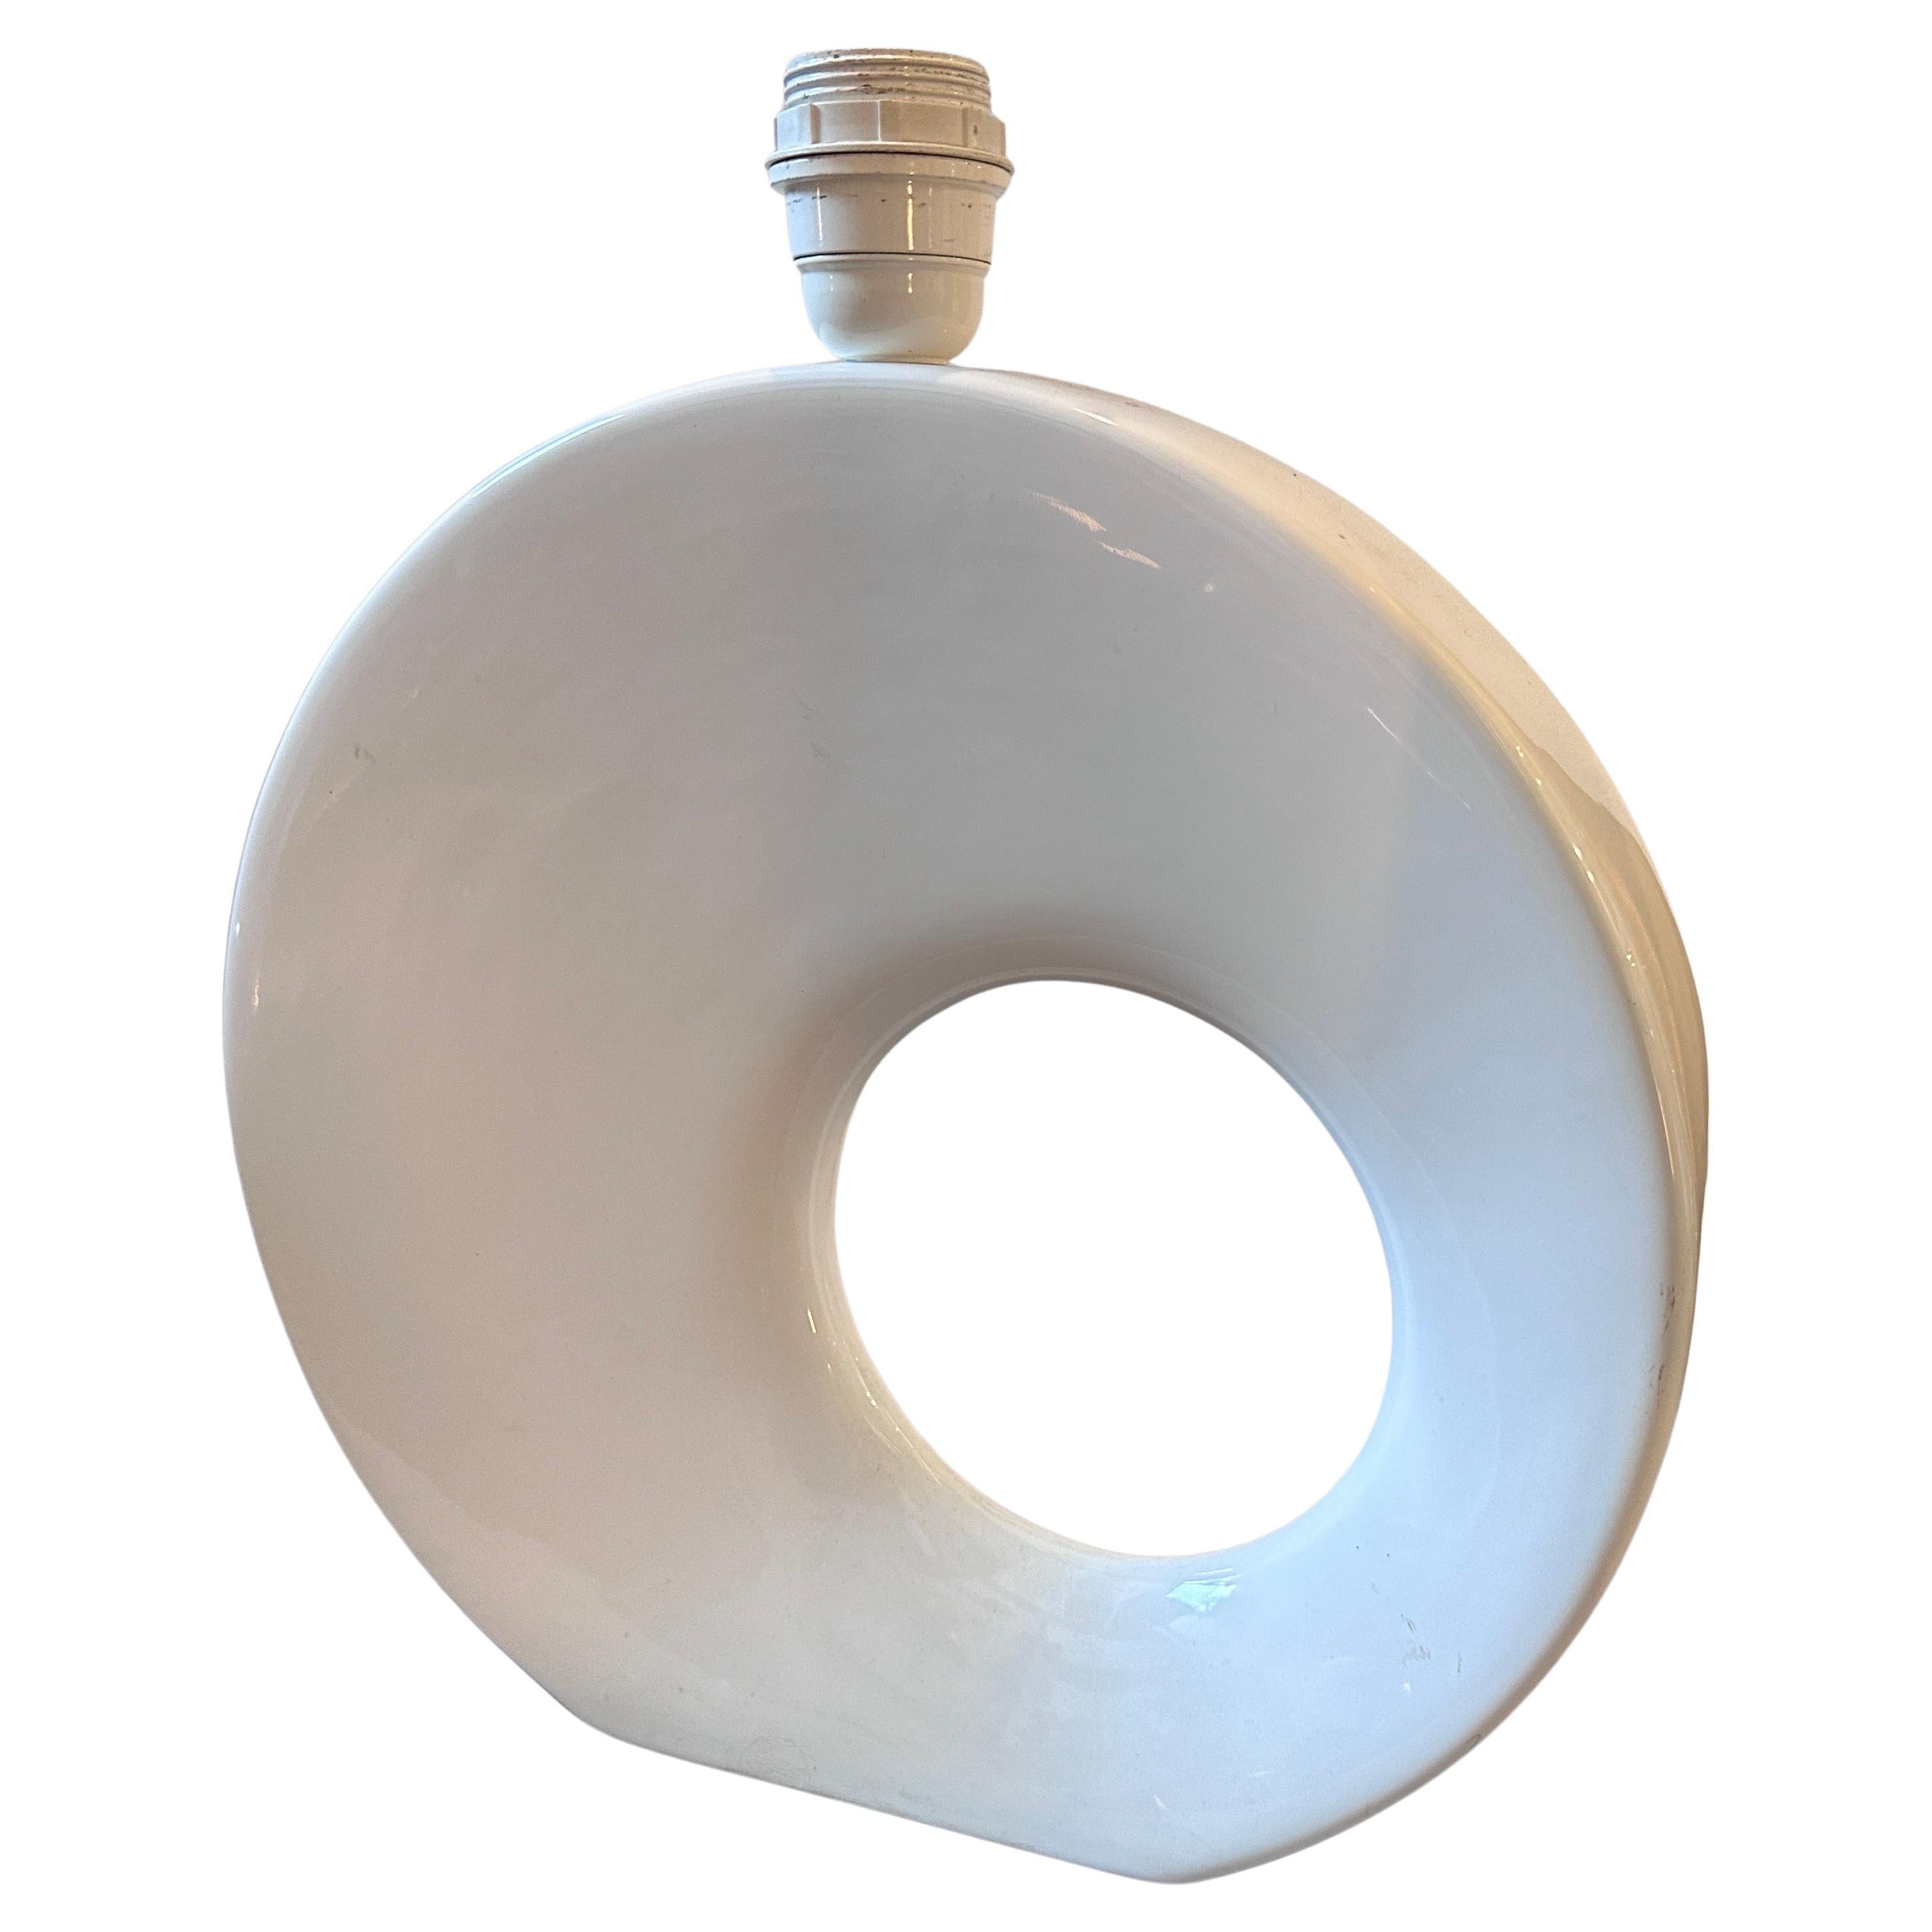 Lampe de table moderniste en porcelaine blanche conçue et fabriquée en Allemagne par Rosenthal dans les années 90, la base en porcelaine a une forme ronde avec un trou asymétrique au milieu, le nouvel abat-jour est cylindrique en tissu noir, le tout